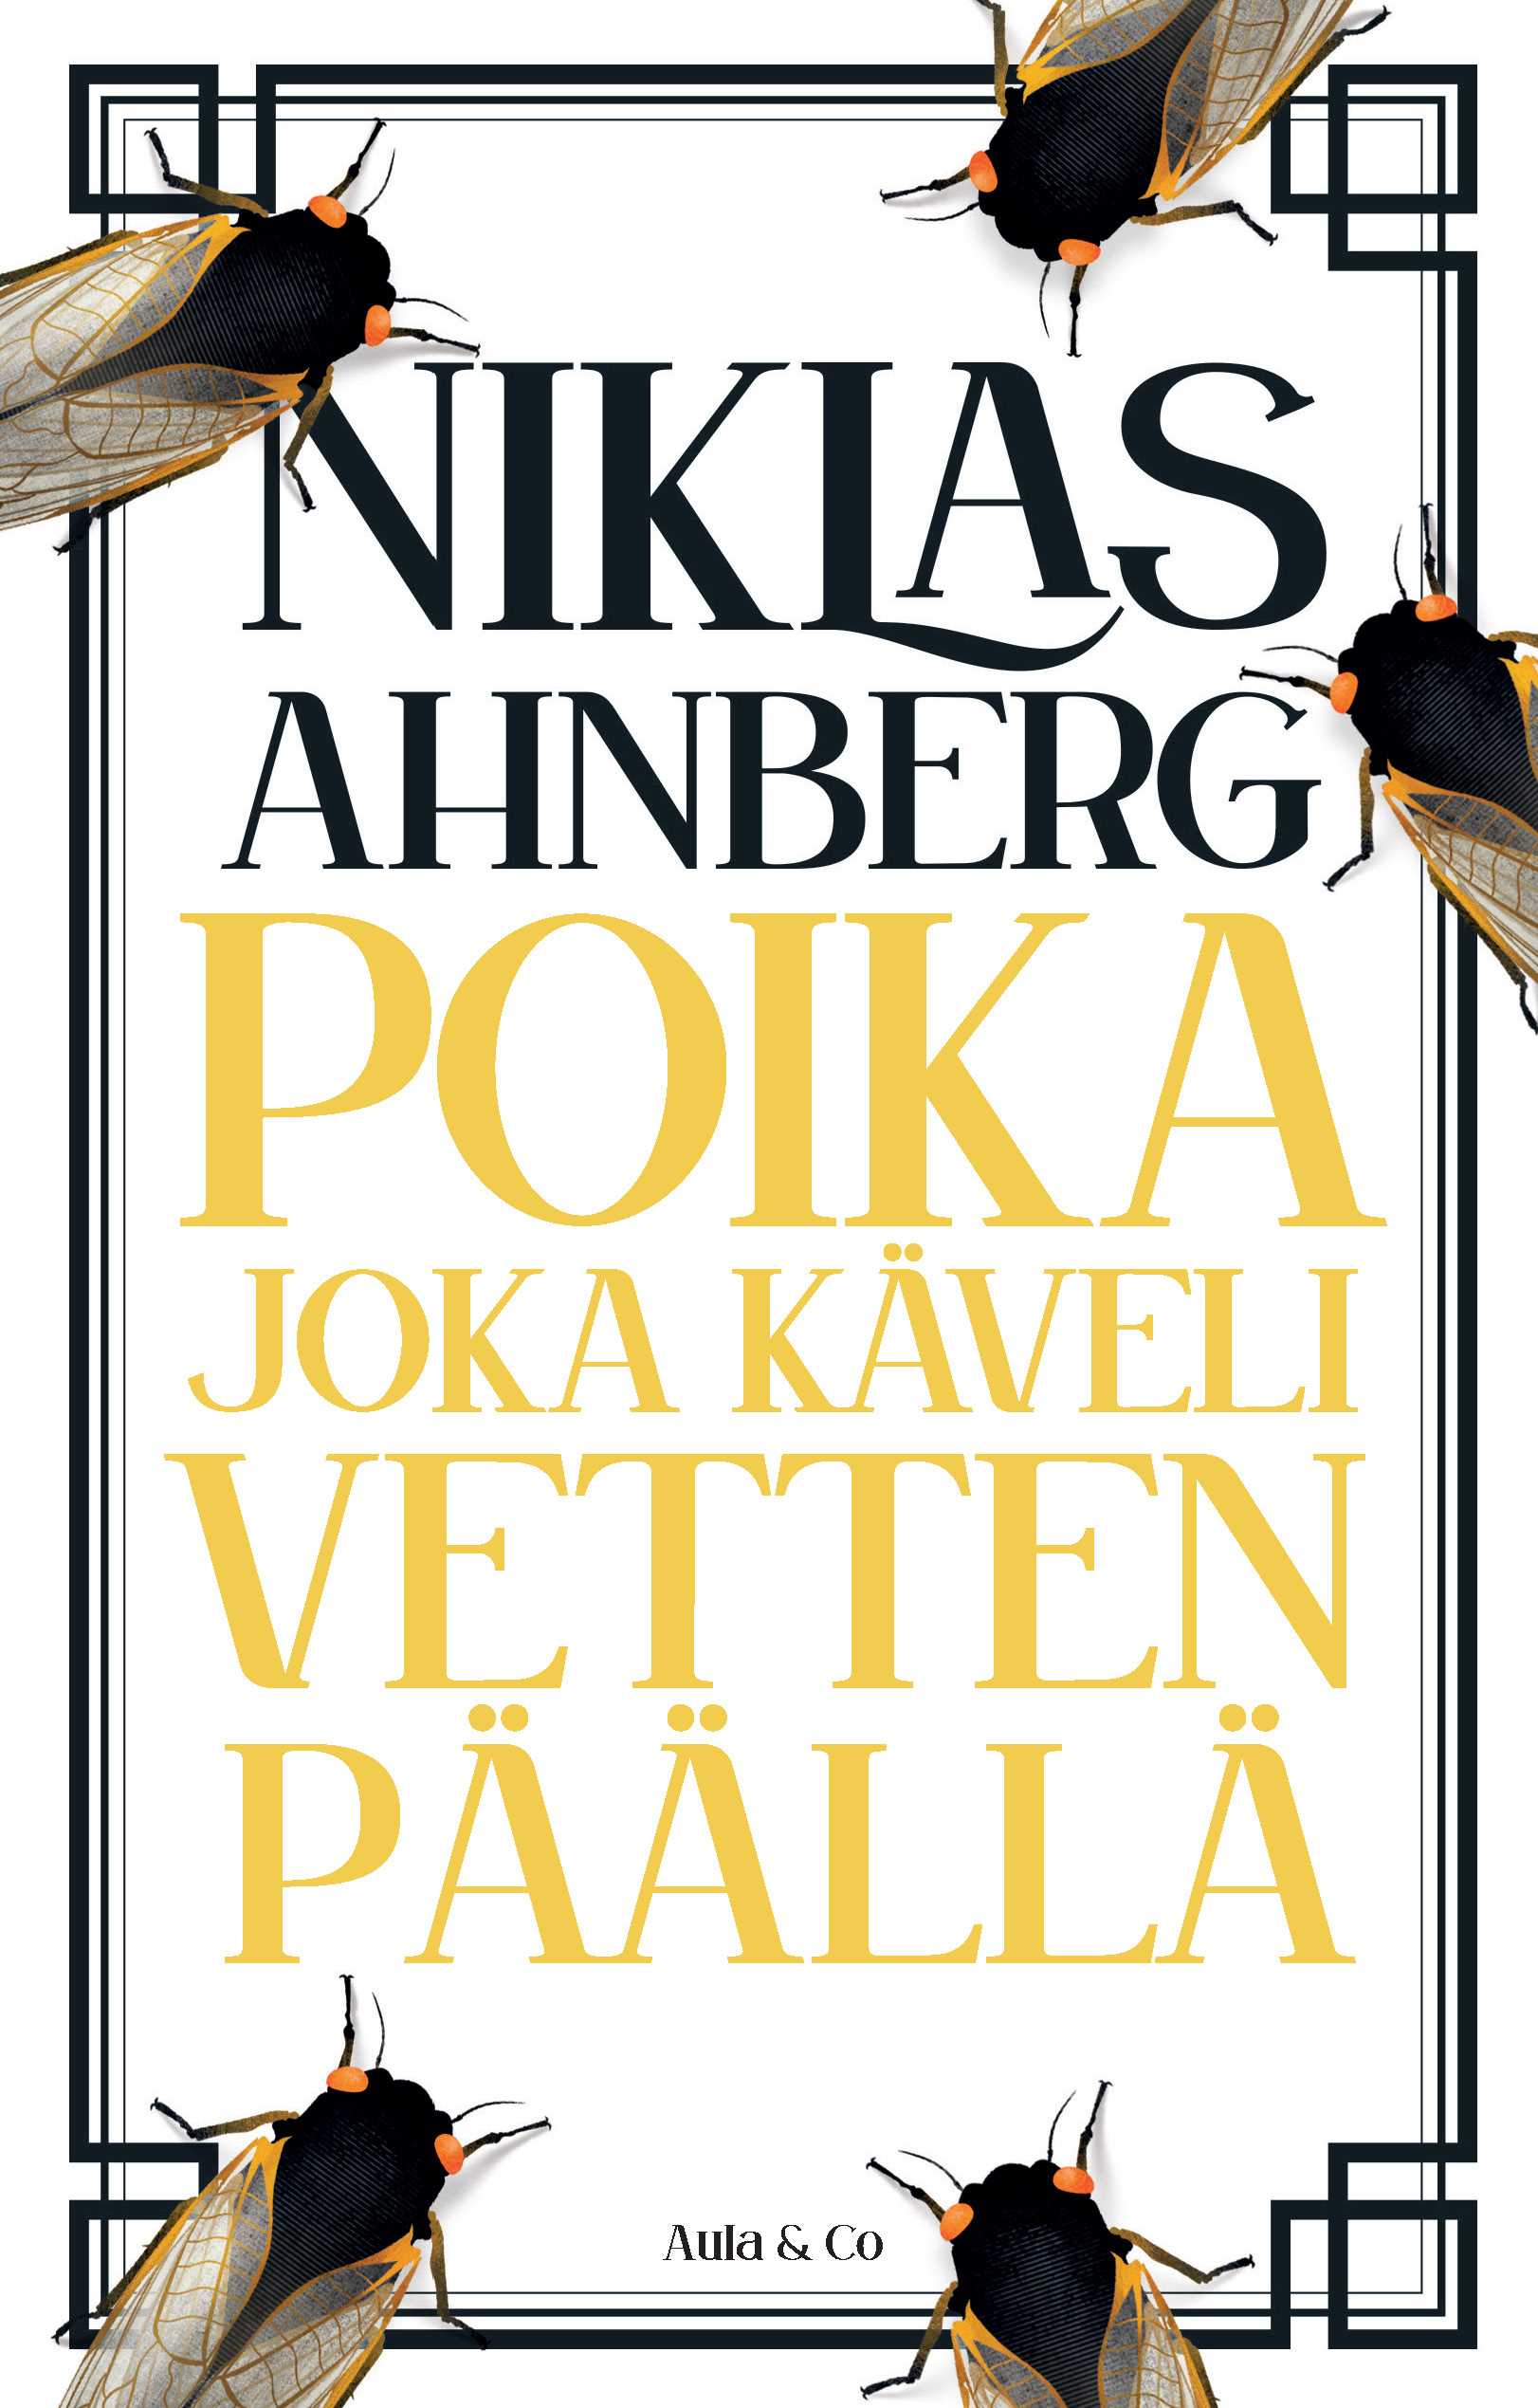 Niklas Ahnberg: Poika joka käveli vetten päällä (AudiobookFormat, suomi language, Aula & Co.)